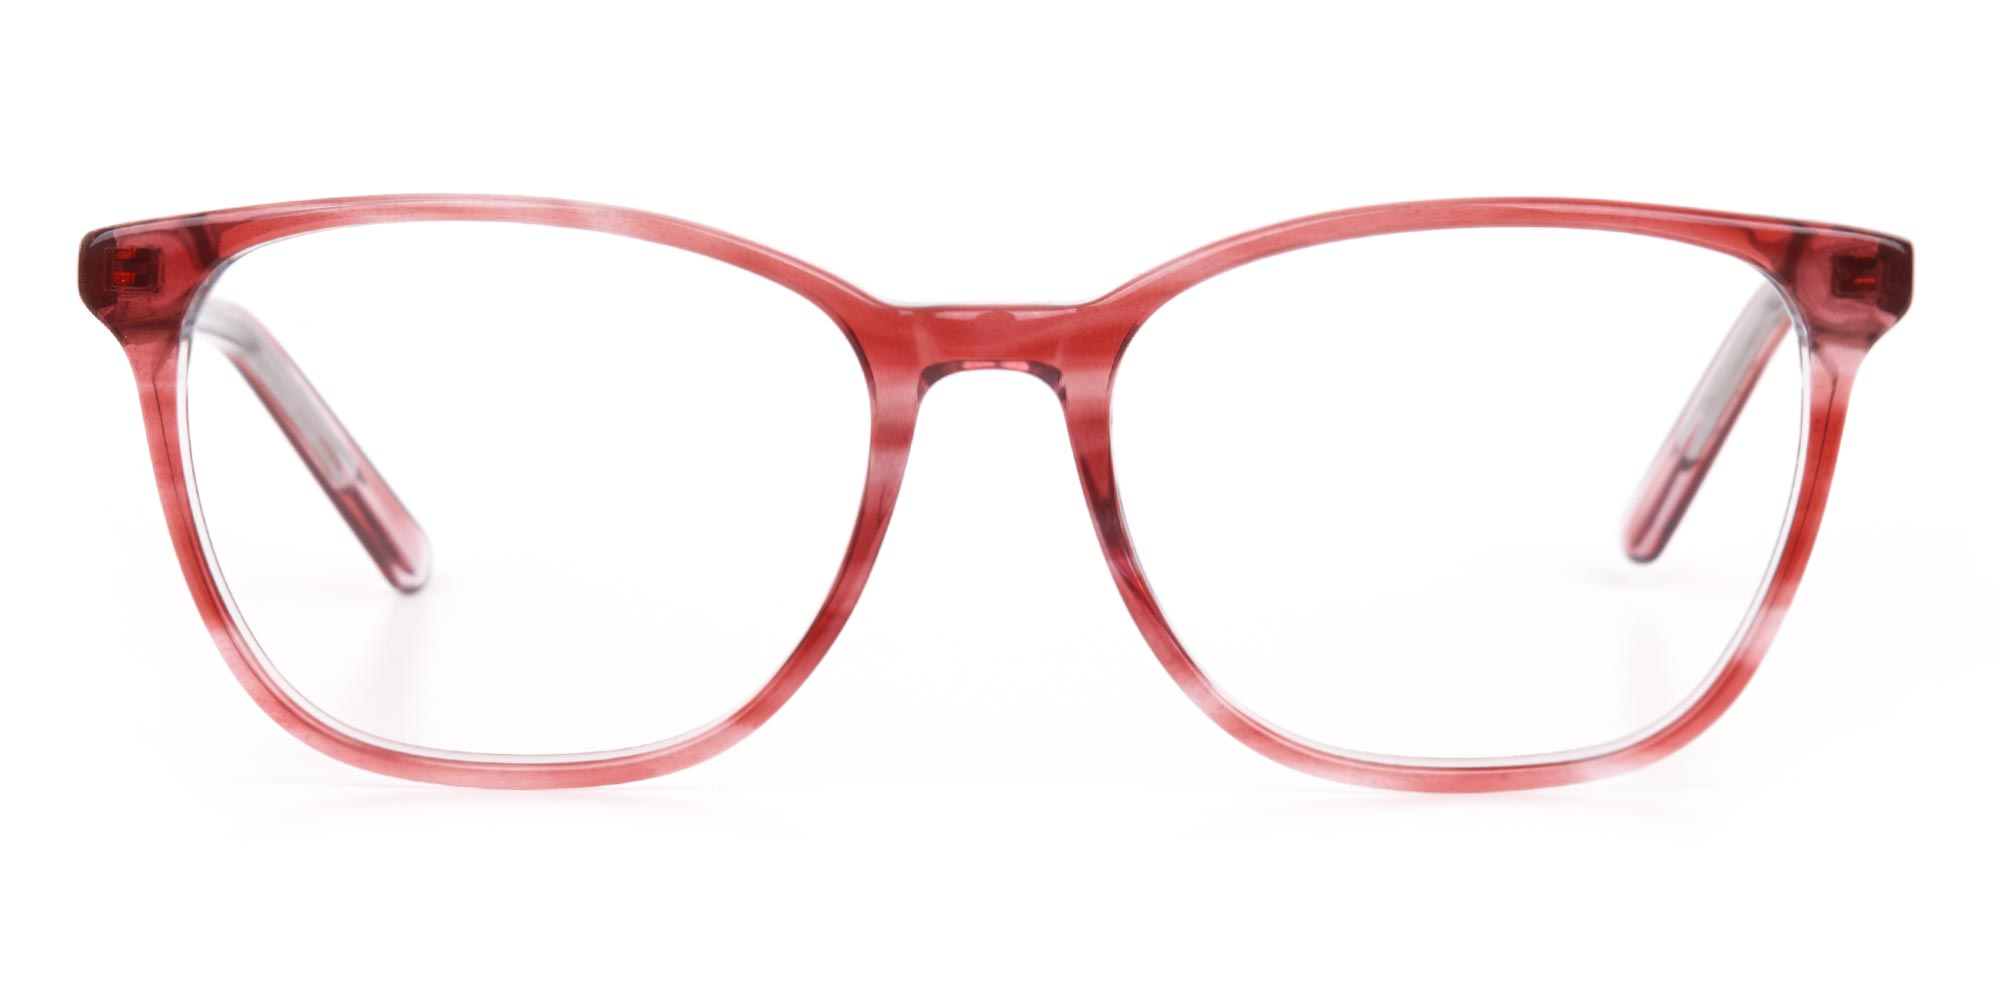 Translucent Rose Red Wayfarer Acetate Glasses-1